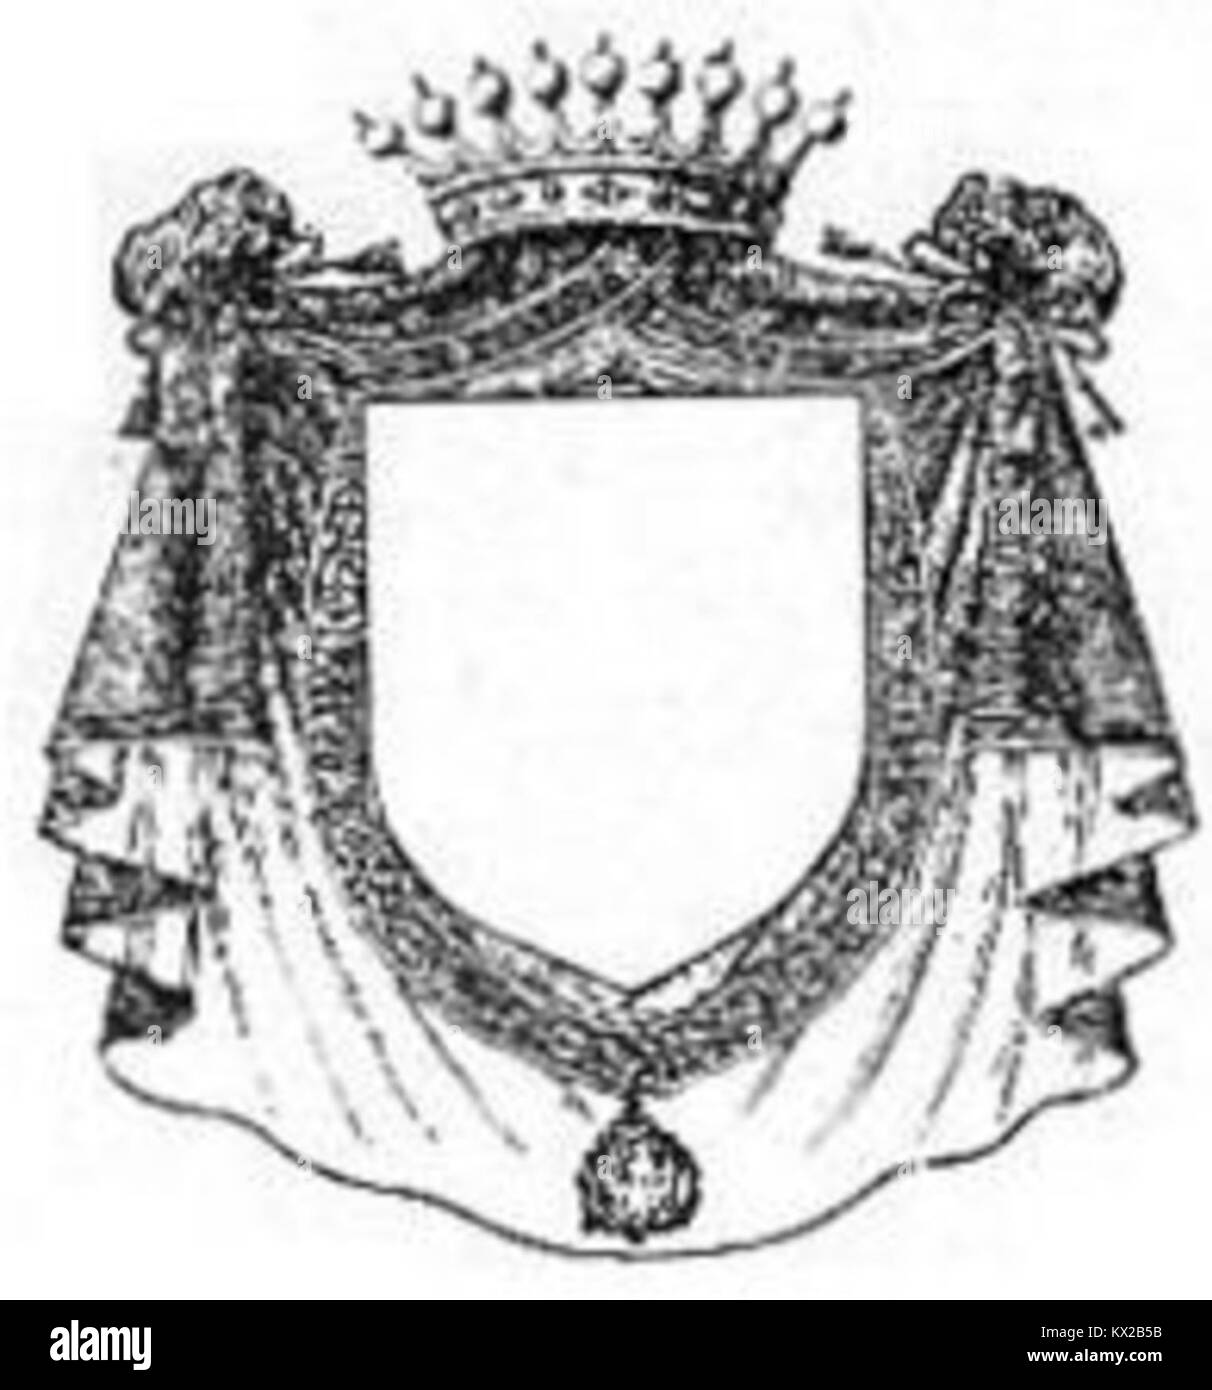 Distinzione di dignita dei Cavalieri dell'ordine supremo della Santissima Annunziata (1905-oggi) Foto Stock